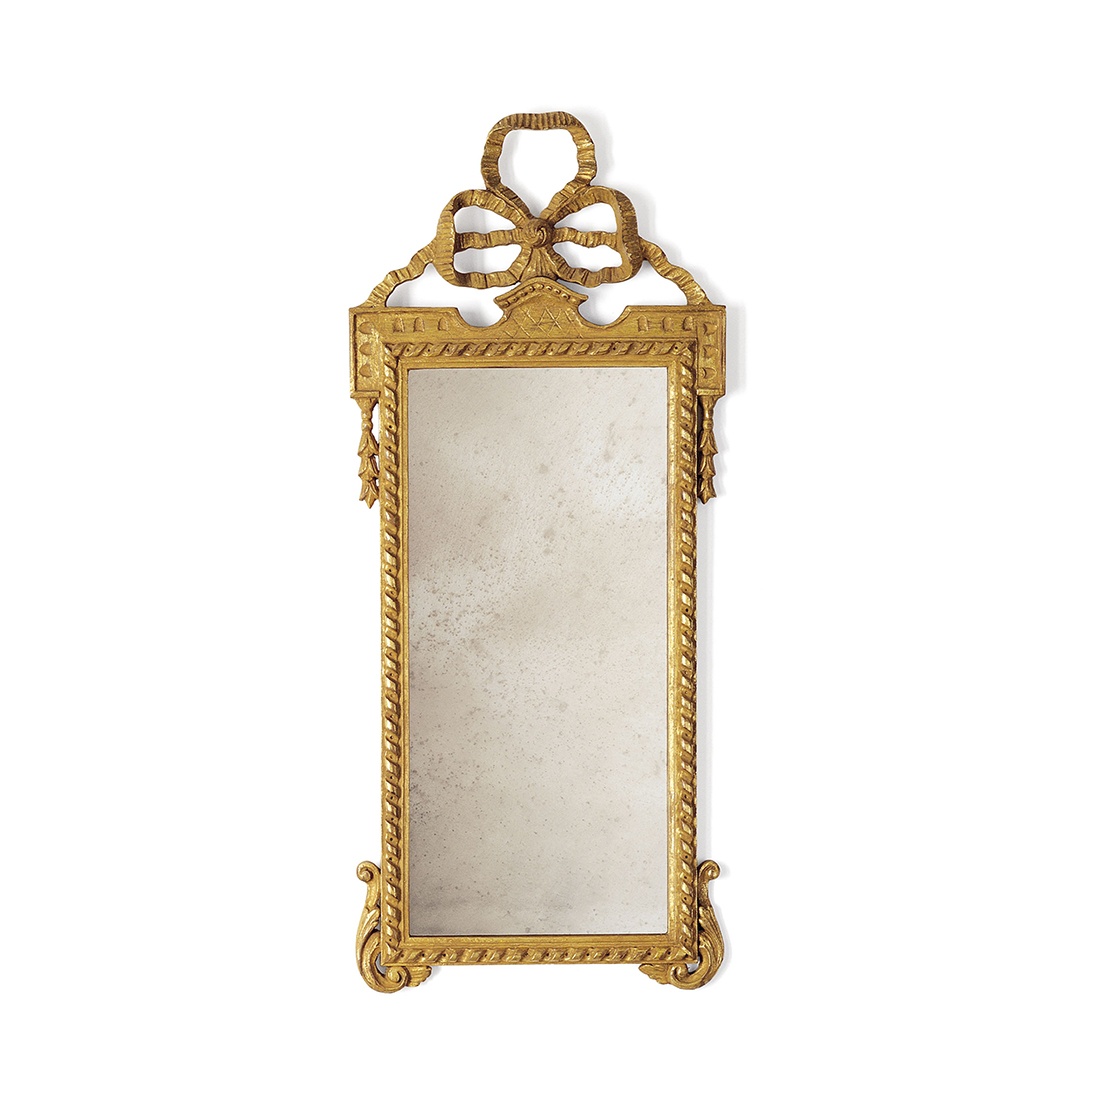 Antoinette mirror in Burnt gold - Beaumont & Fletcher